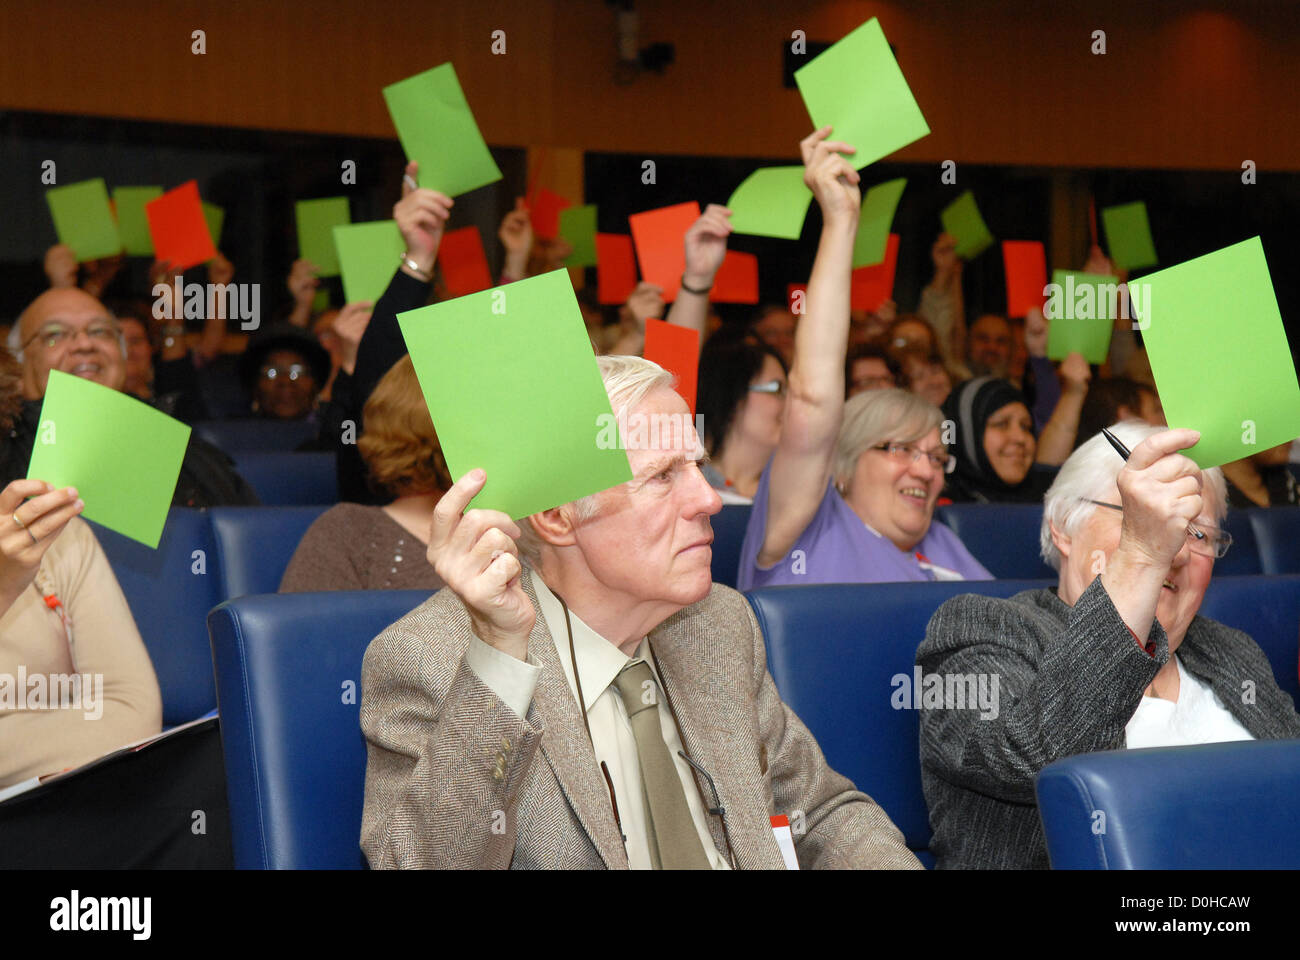 Les délégués participant à une conférence à l'aide de soignants des cartes de couleur pour signaler leurs intentions de vote, Londres, Royaume-Uni. Banque D'Images